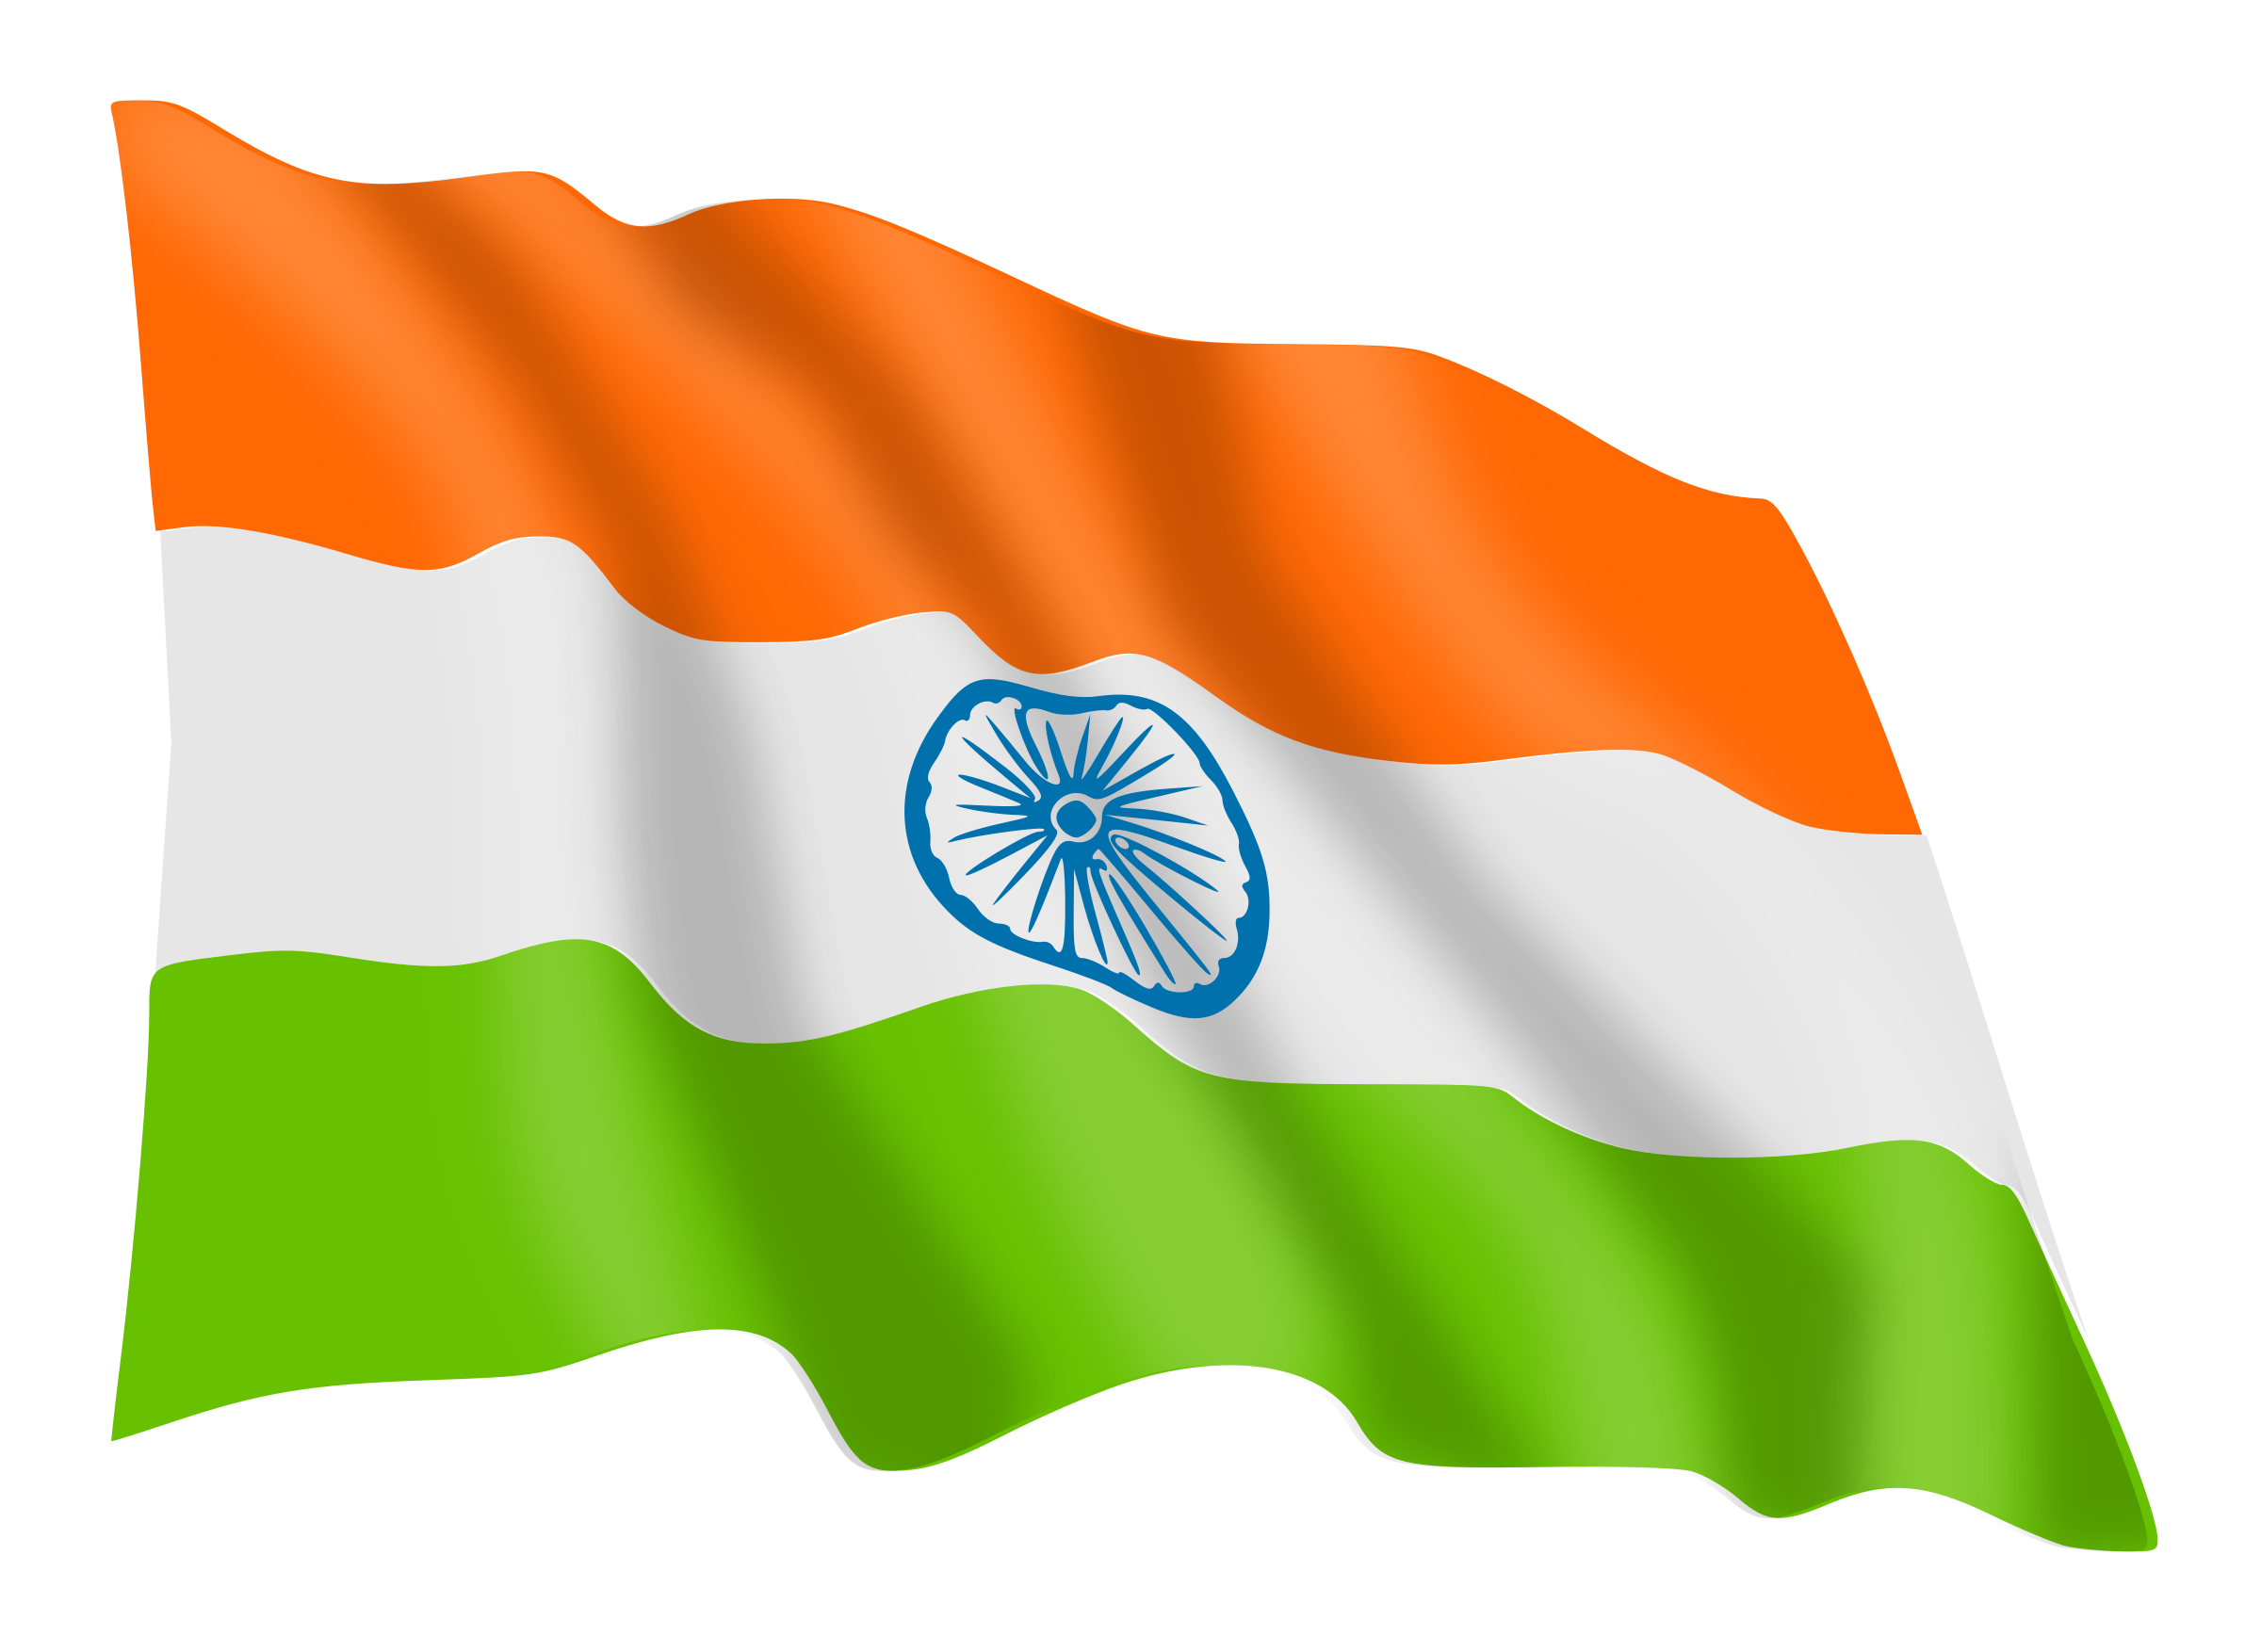 Bandiera indiana